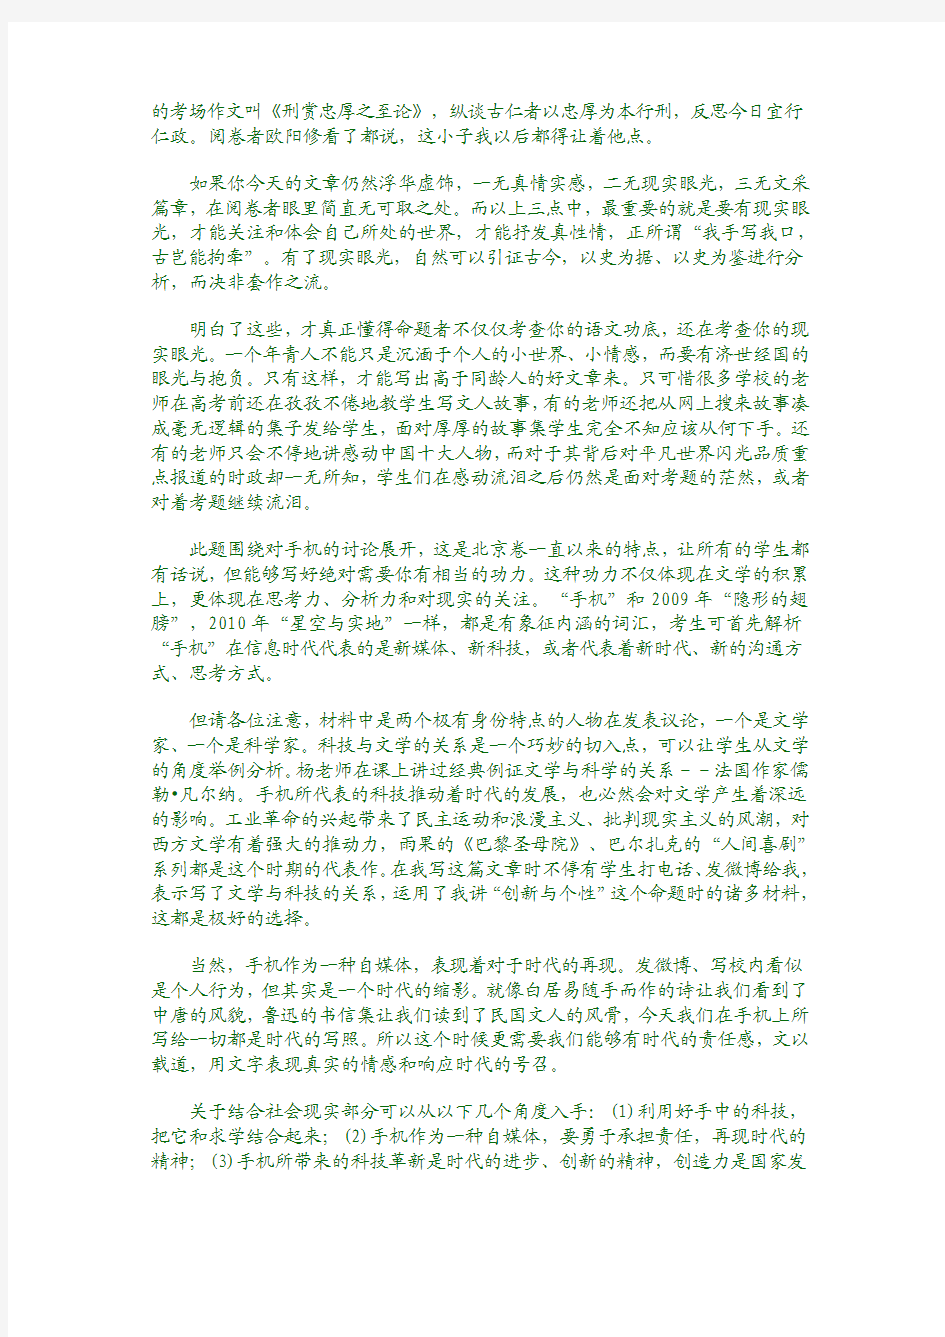 2013年高考北京卷作文点评及优秀作文